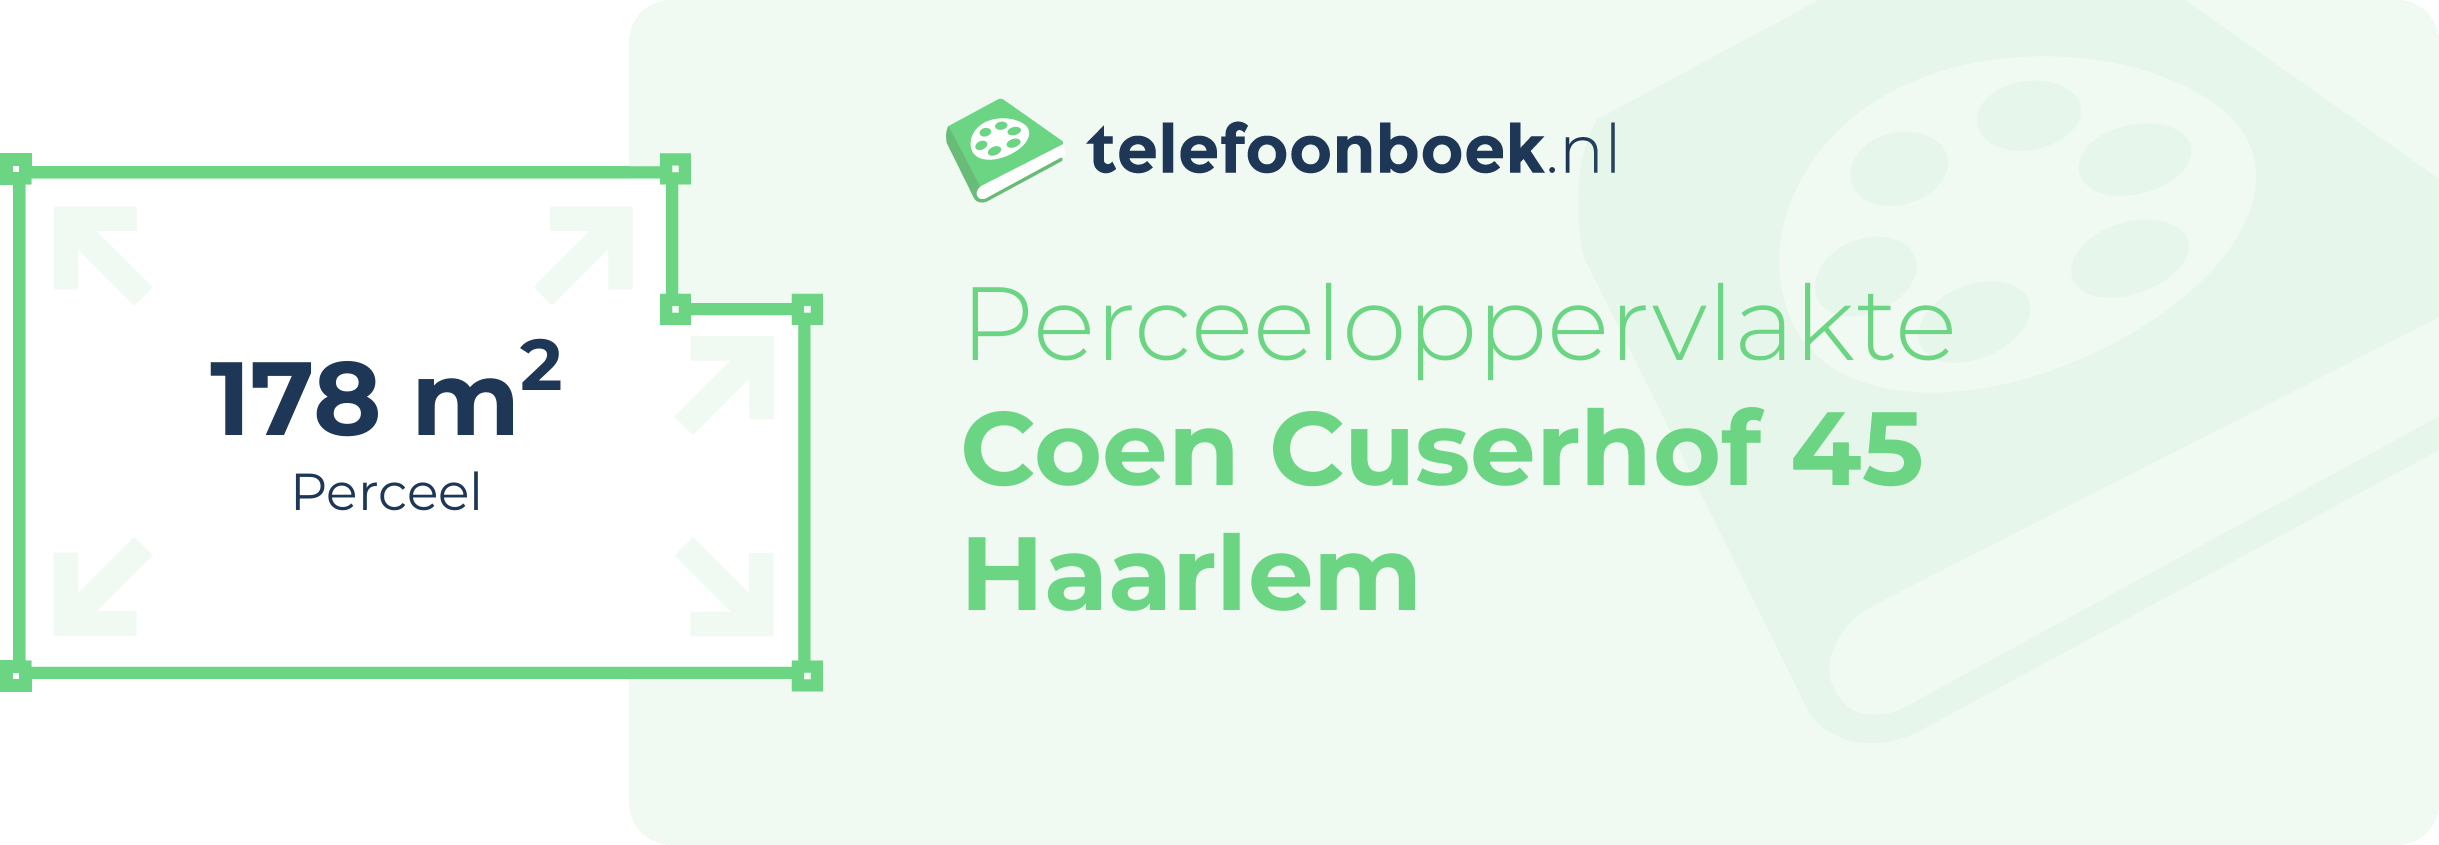 Perceeloppervlakte Coen Cuserhof 45 Haarlem